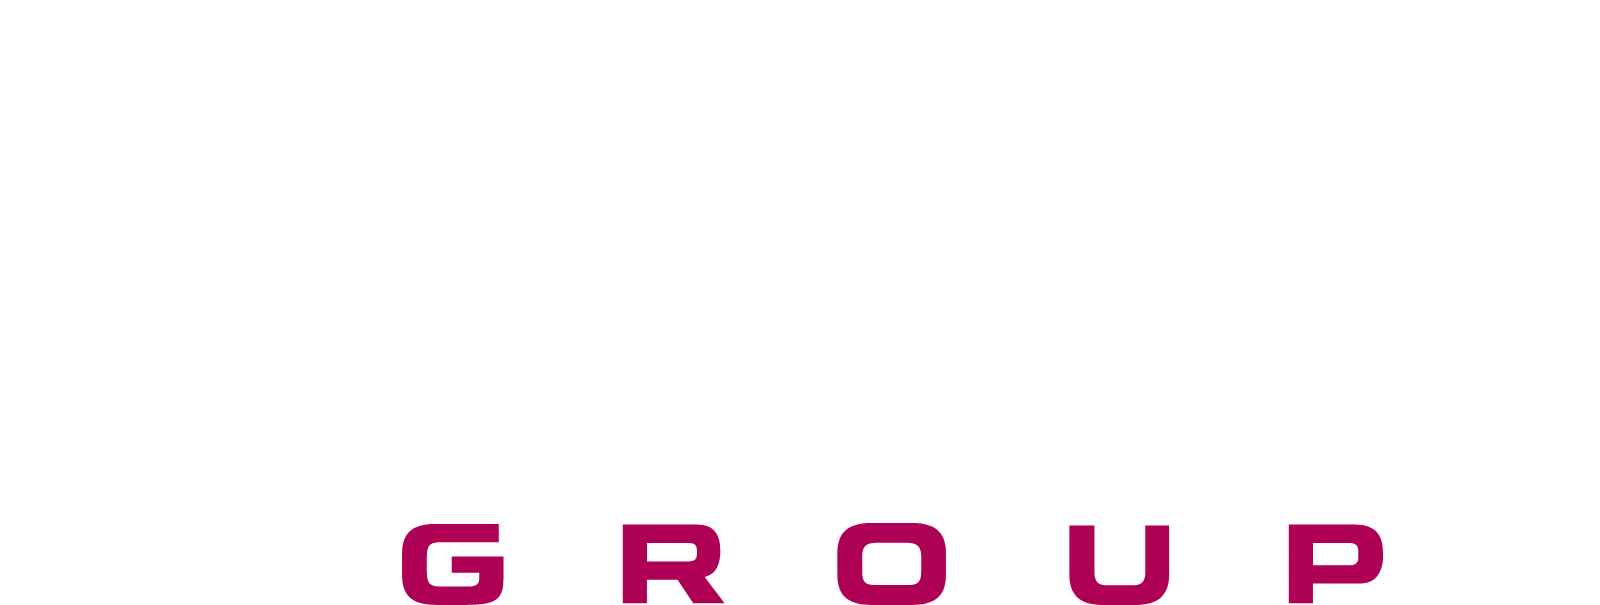 KION Group logo large for dark backgrounds (transparent PNG)